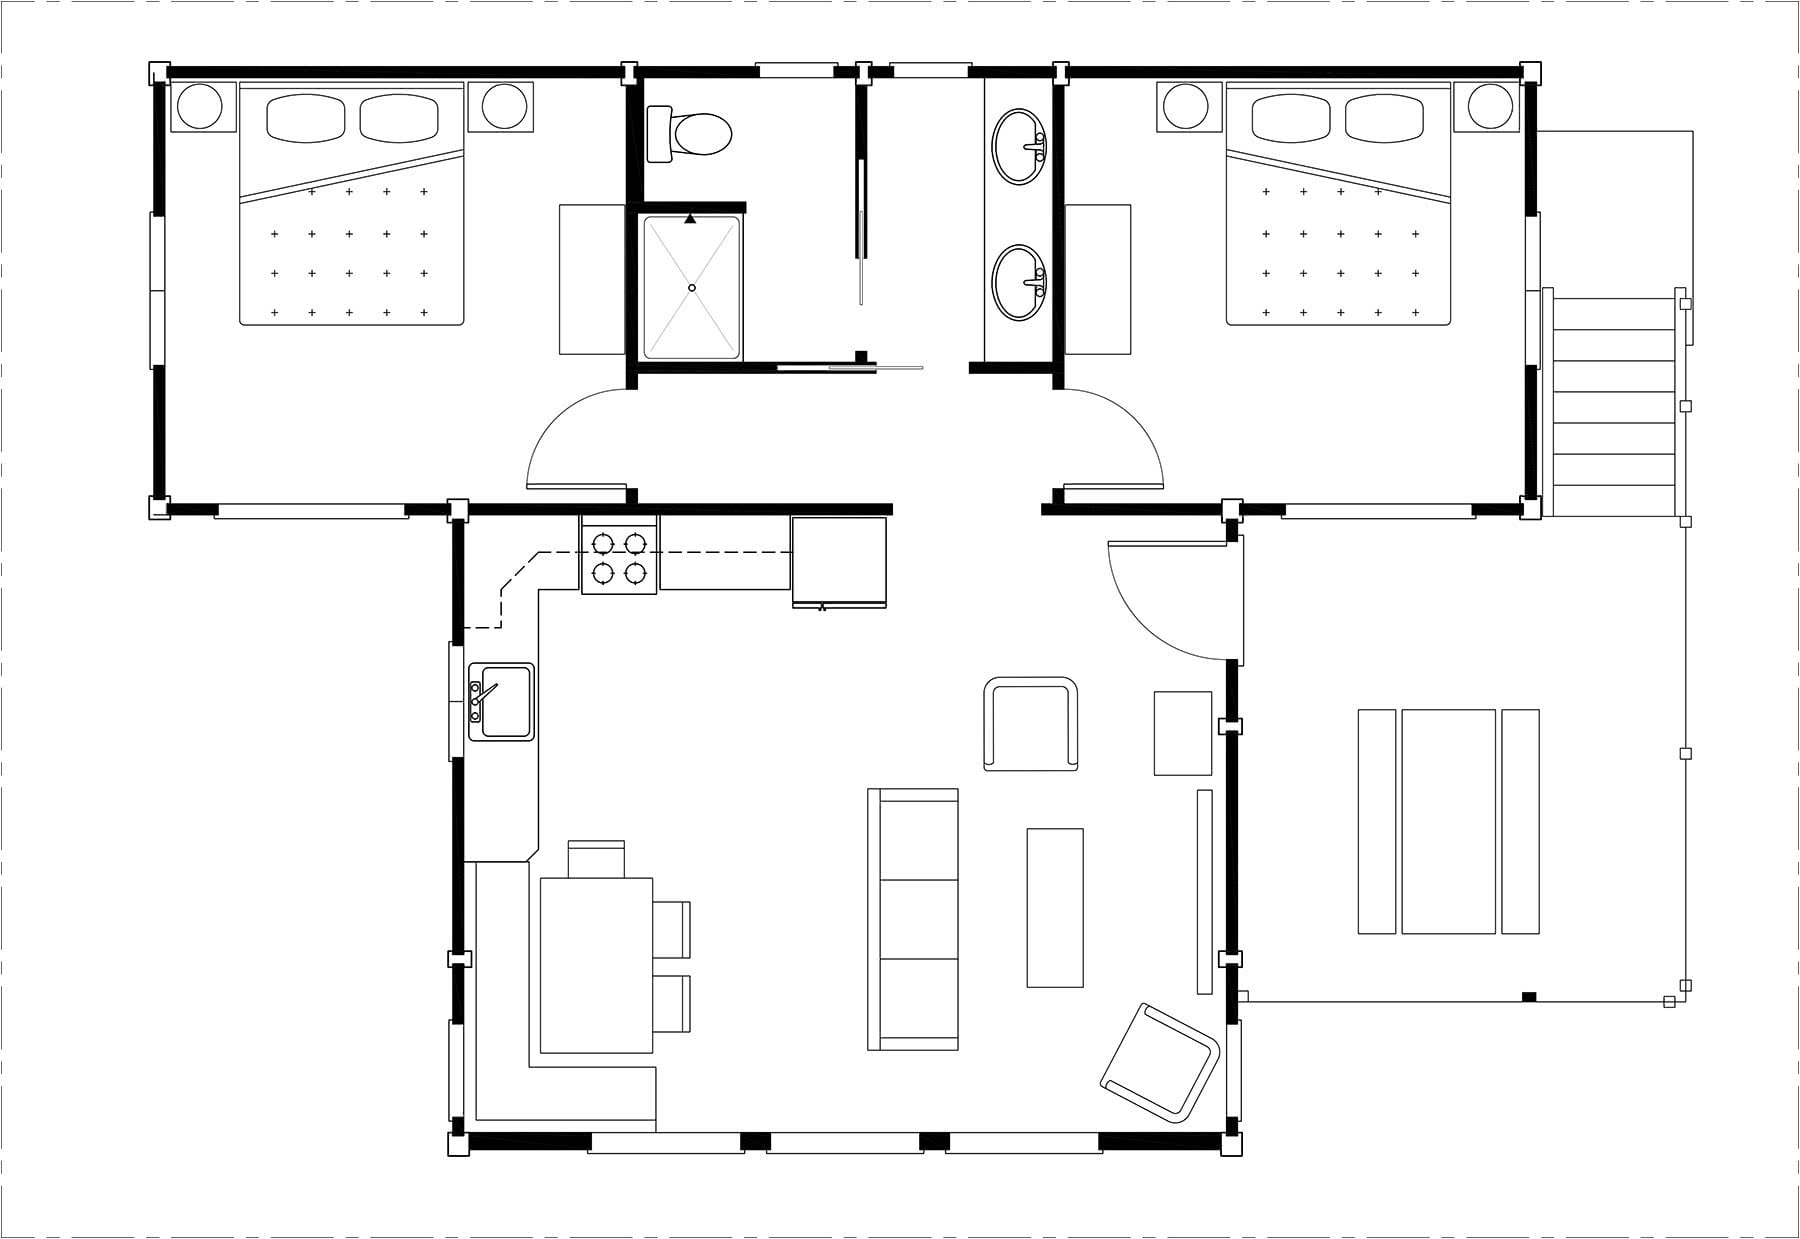 Two Bedroom Water View King Cabin Floor Plan